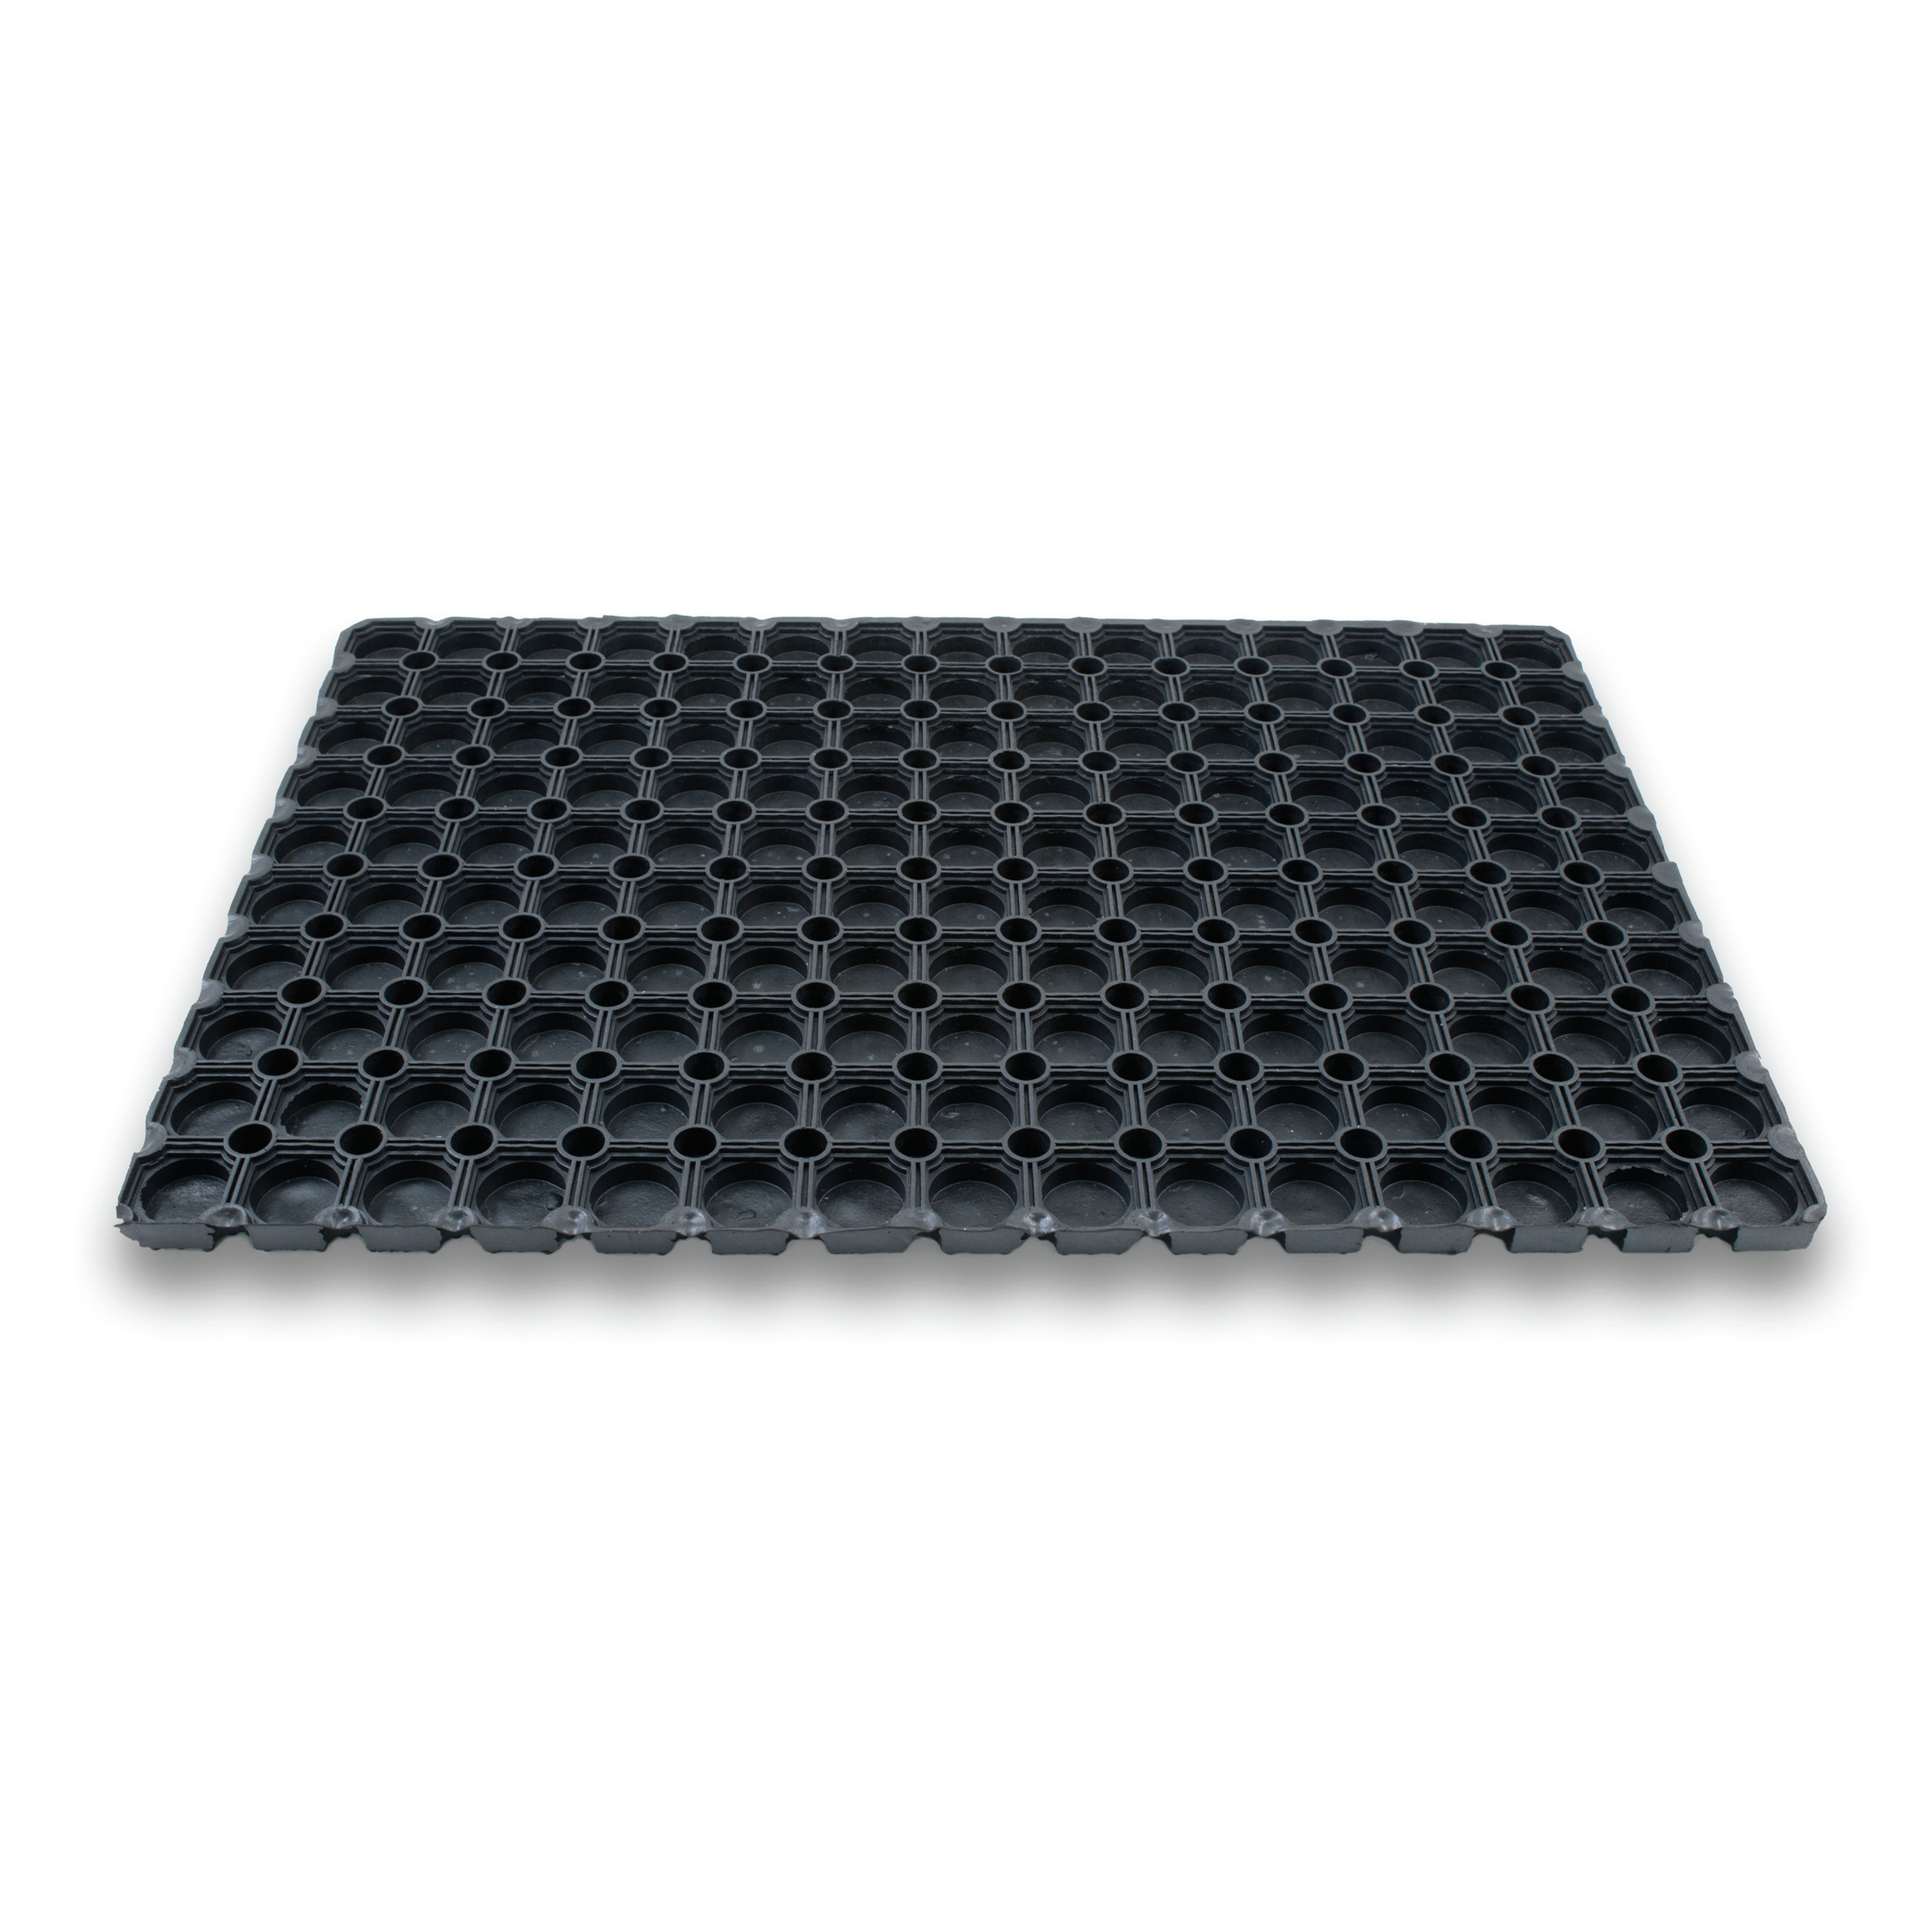 1x Rubberen deurmatten/schoonloopmatten zwart 50 x 80 cm rechthoekig